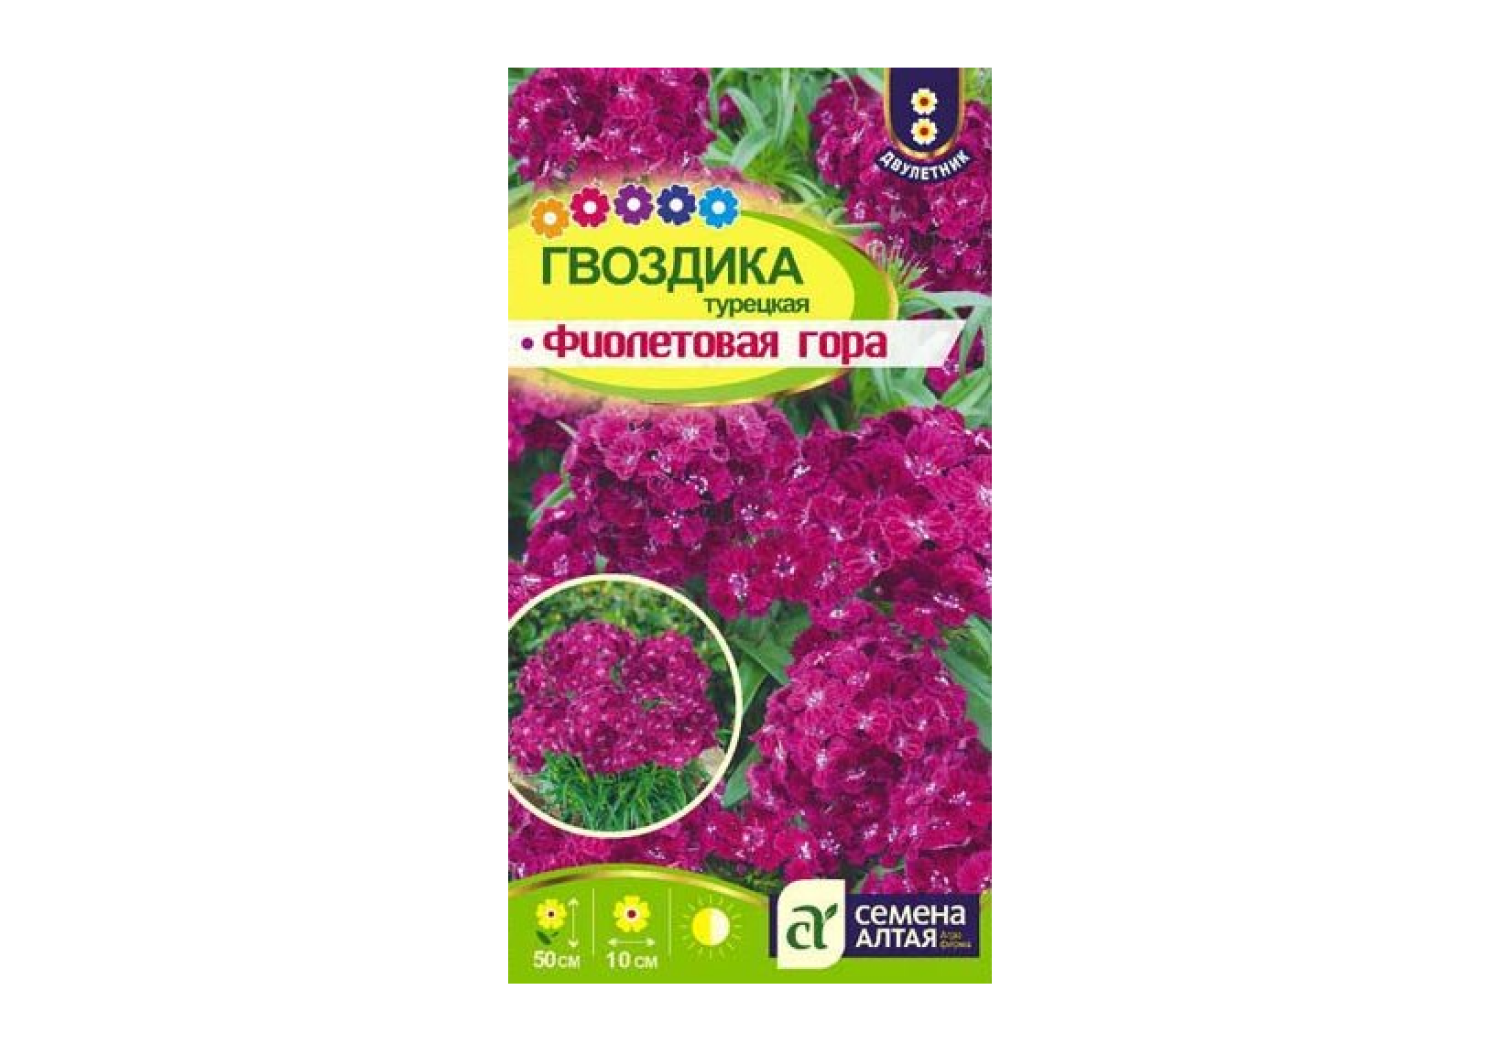 Гвоздика турецкая Фиолетовая гора, семена